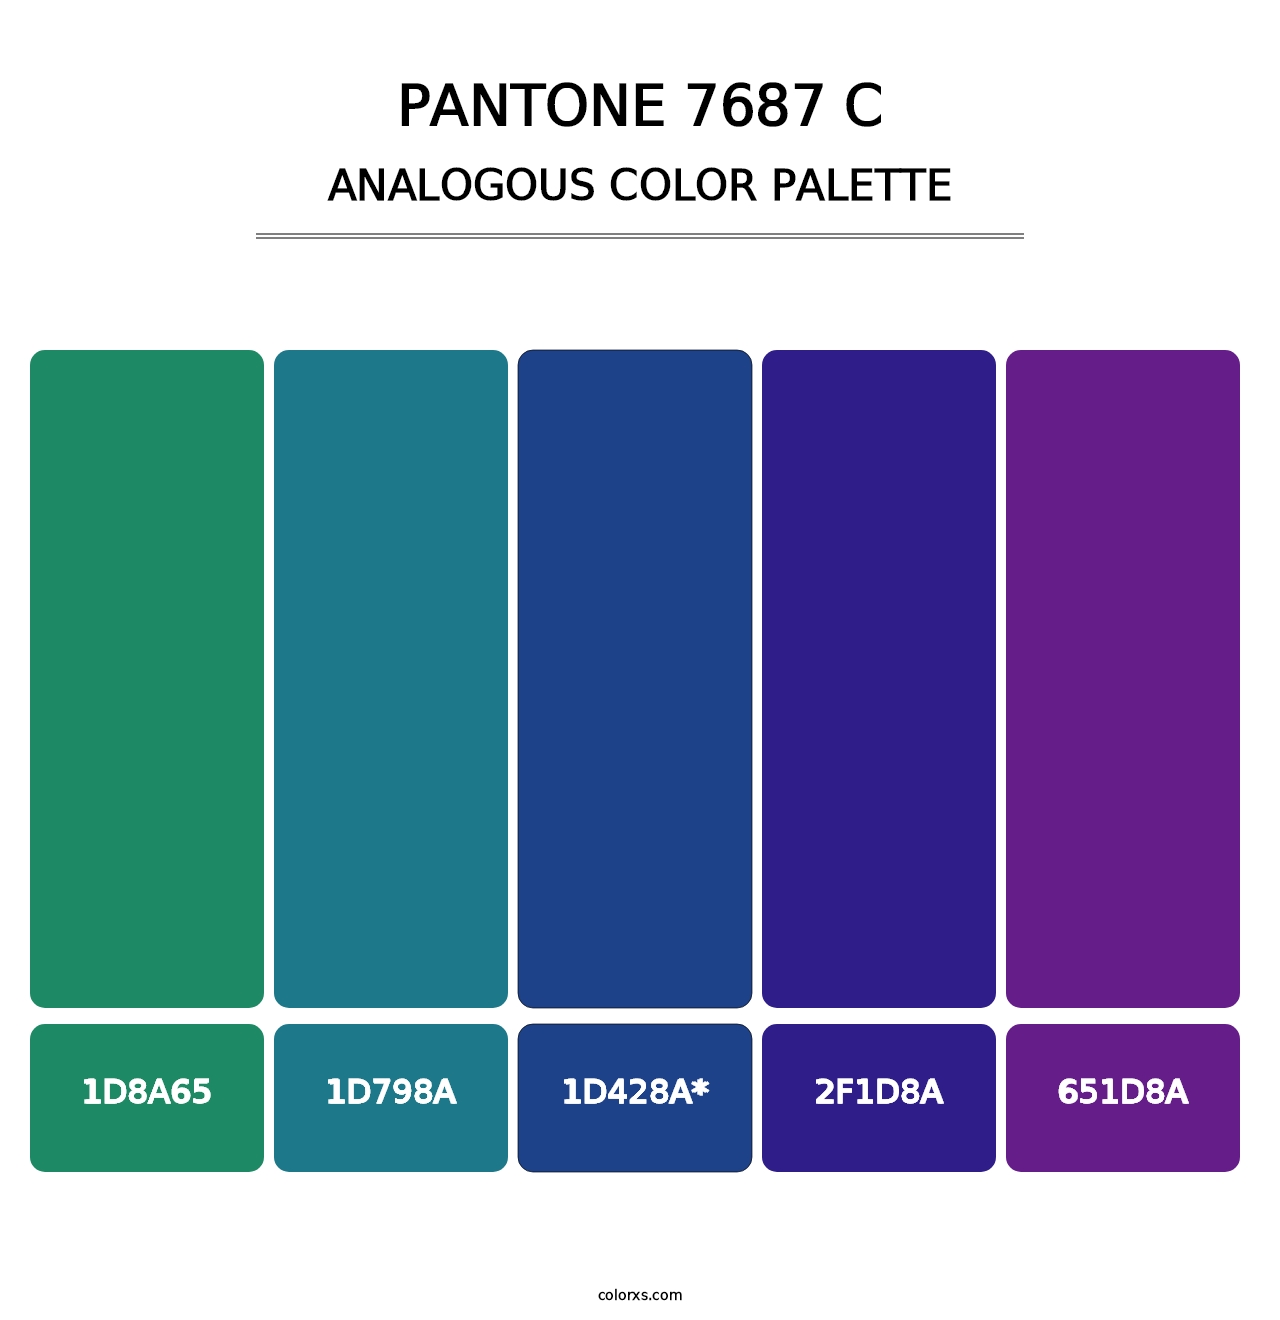 PANTONE 7687 C - Analogous Color Palette